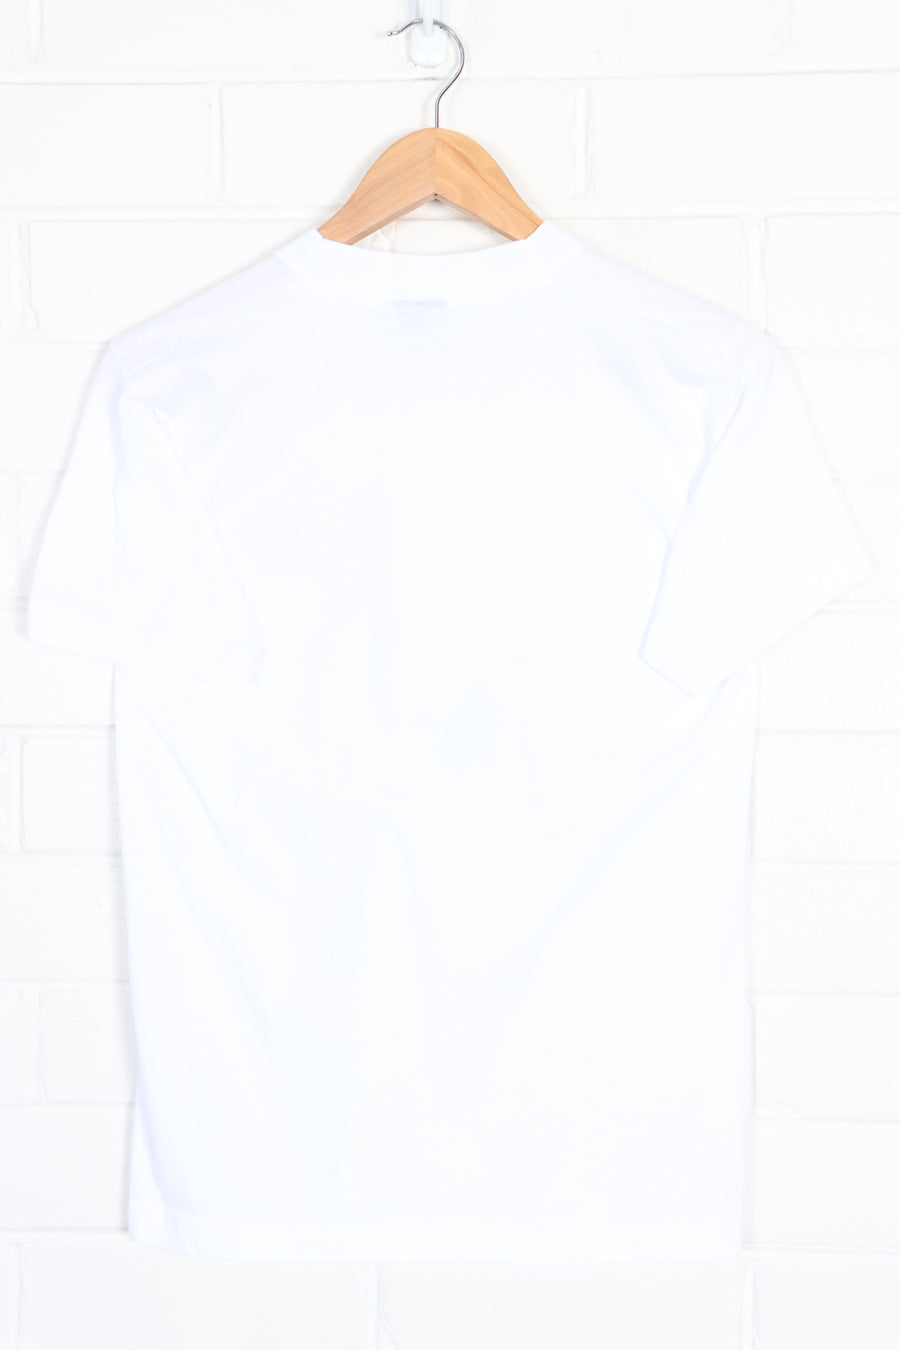 NFL Redskins v Cowboys 1990 Pee Single Stitch T-Shirt USA Made (S)